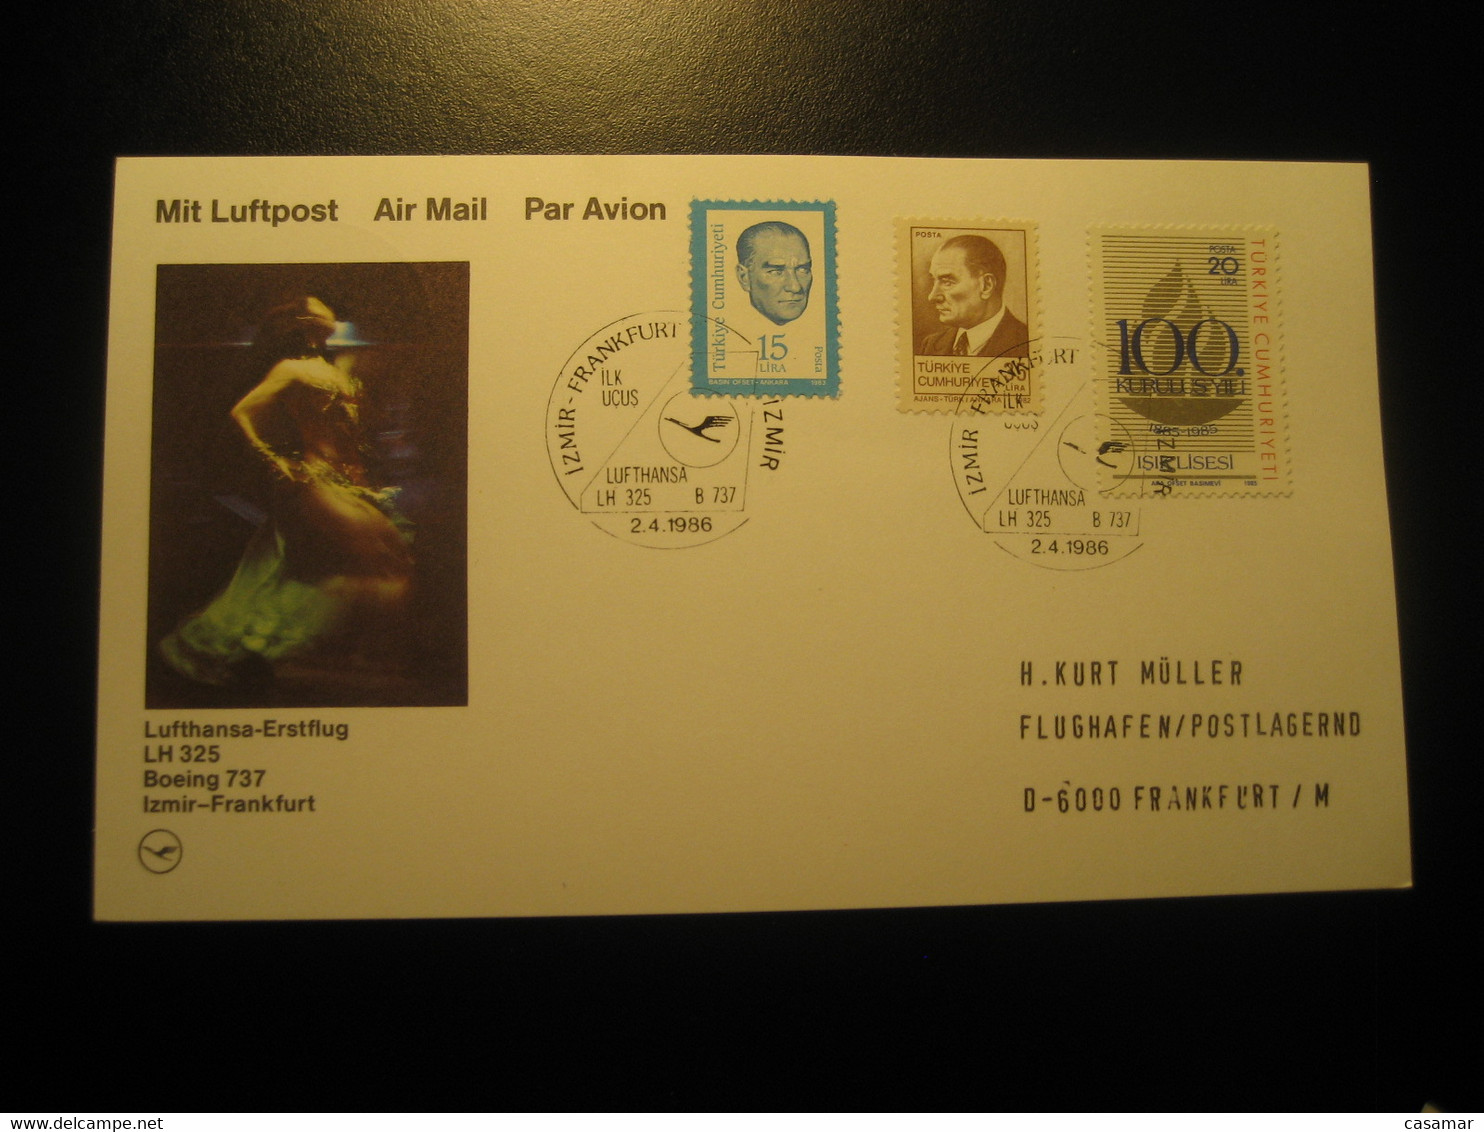 Izmir Frankfurt 1986 Lufthansa Airline Boeing 737 First Flight 3 Stamp Cancel Card Turkey Germany - Airmail